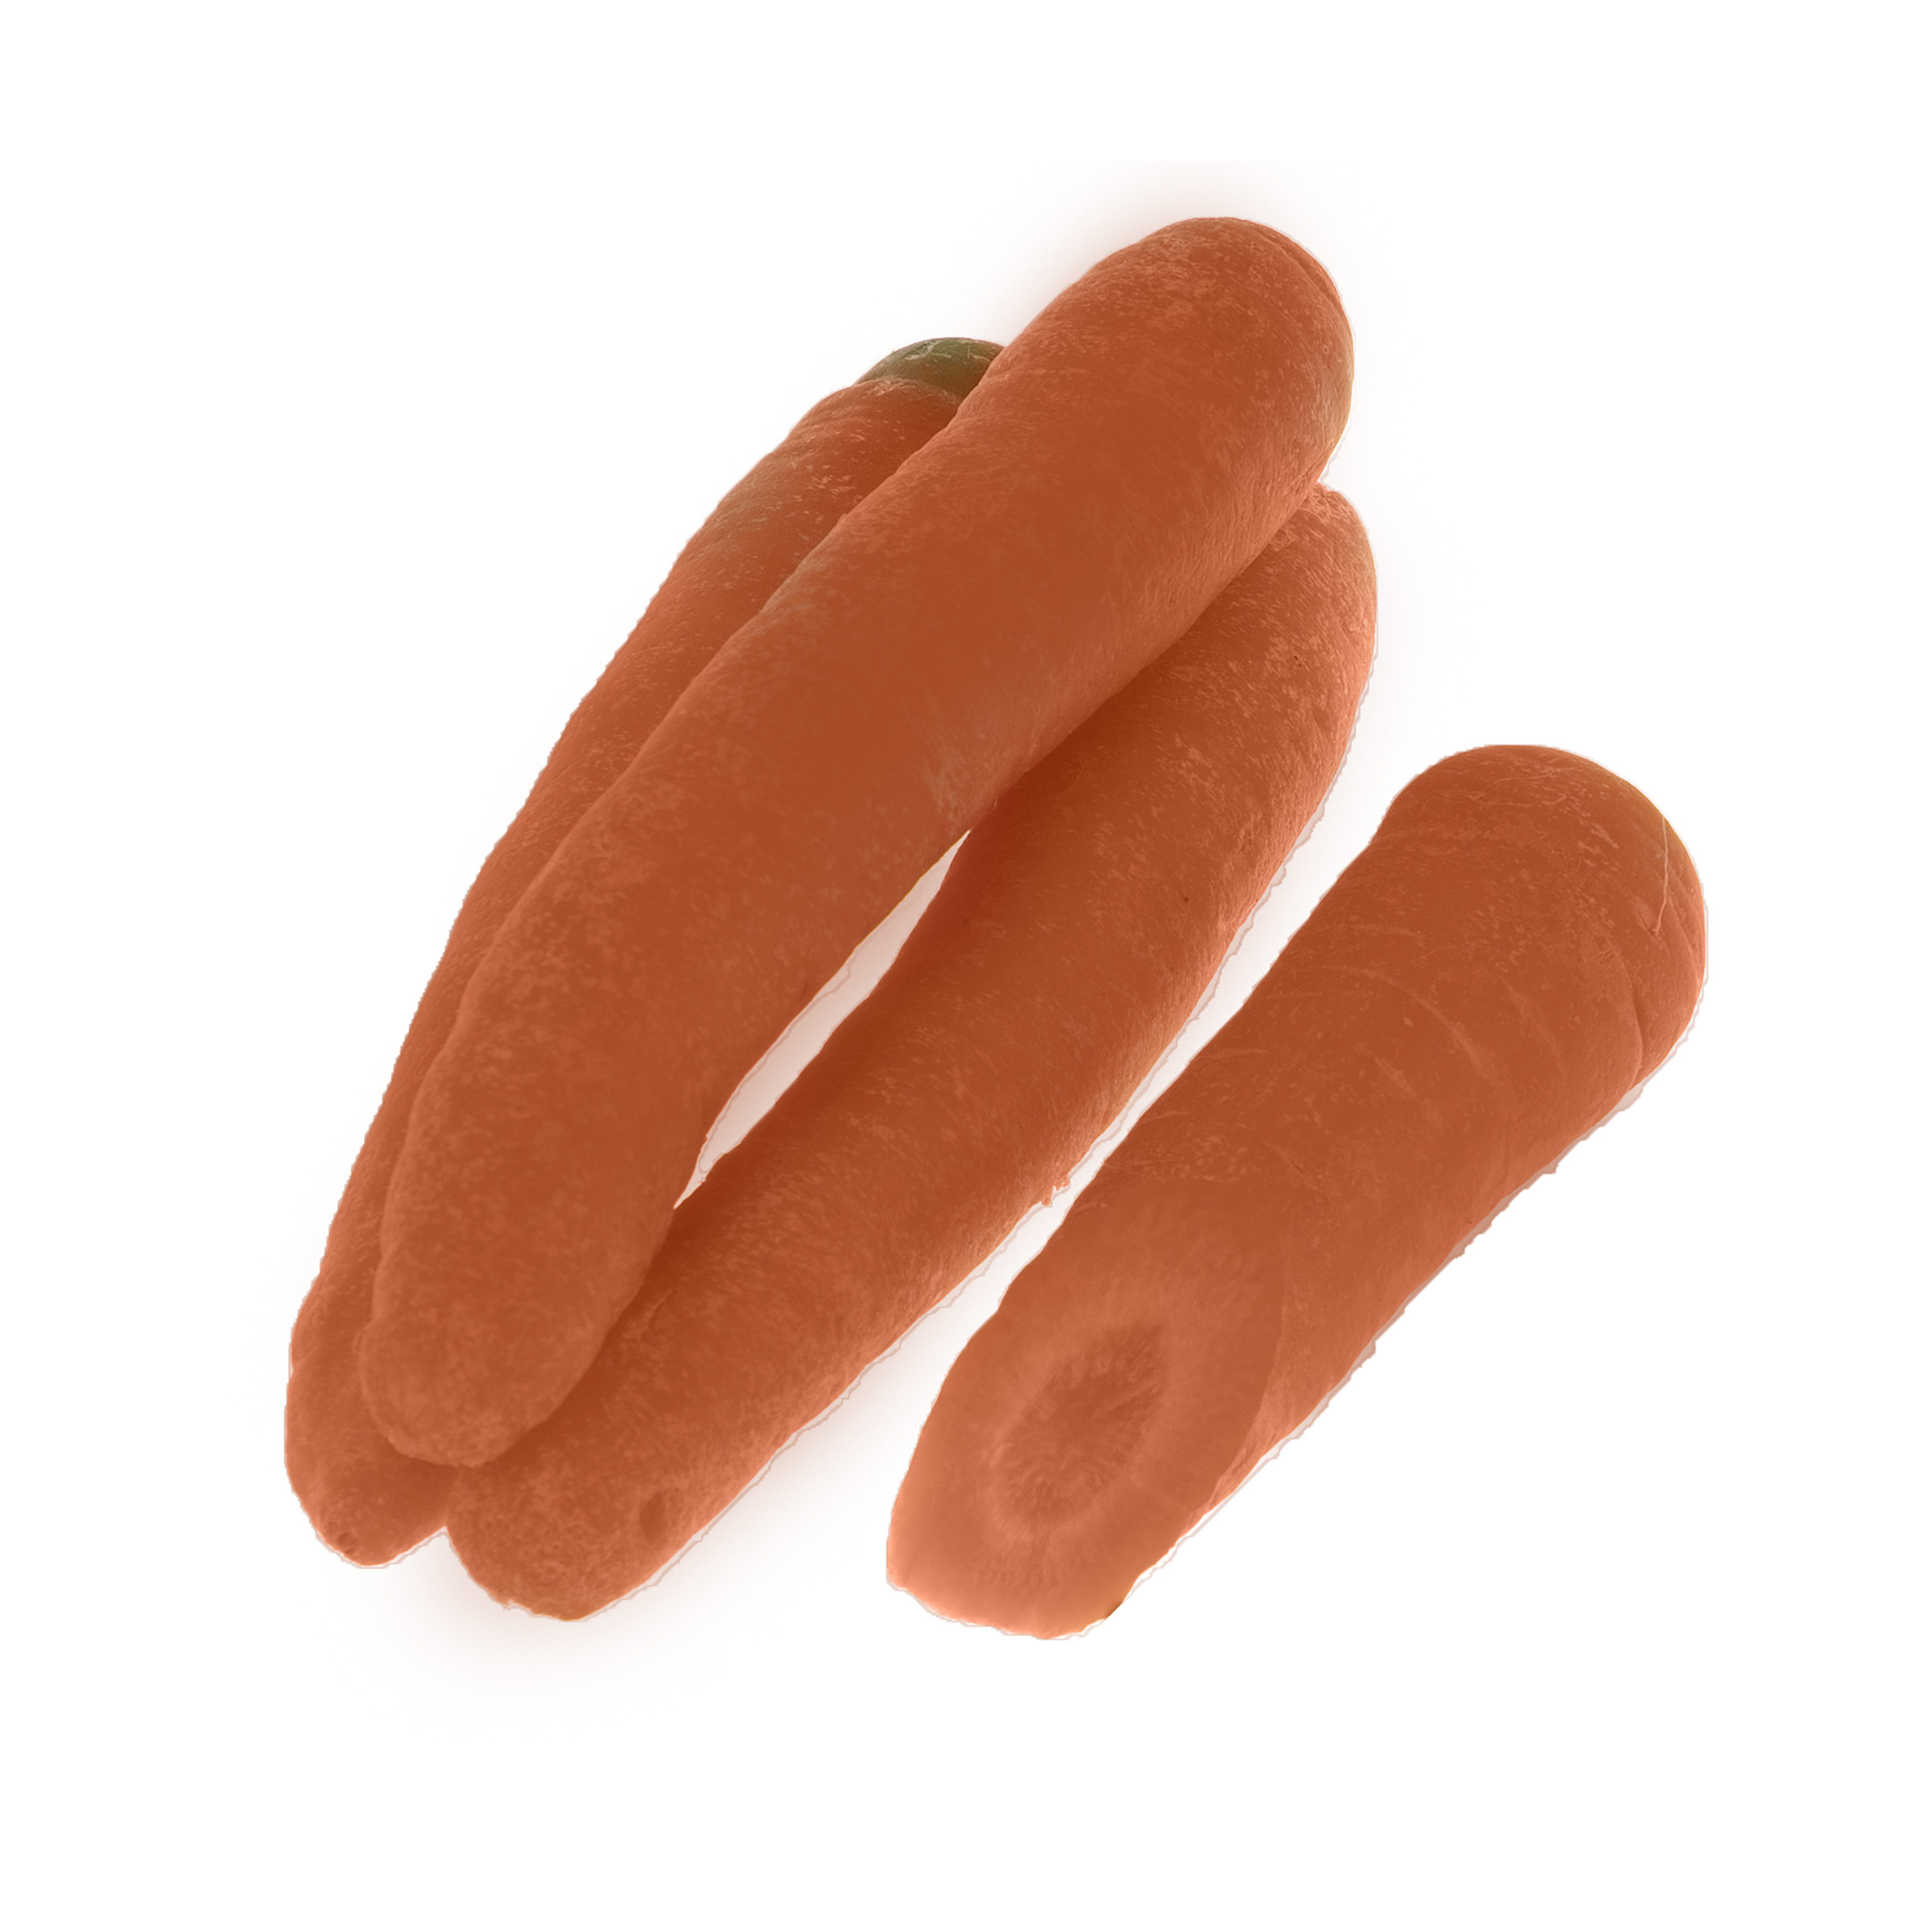 هویج بلوط 1 کیلوگرم